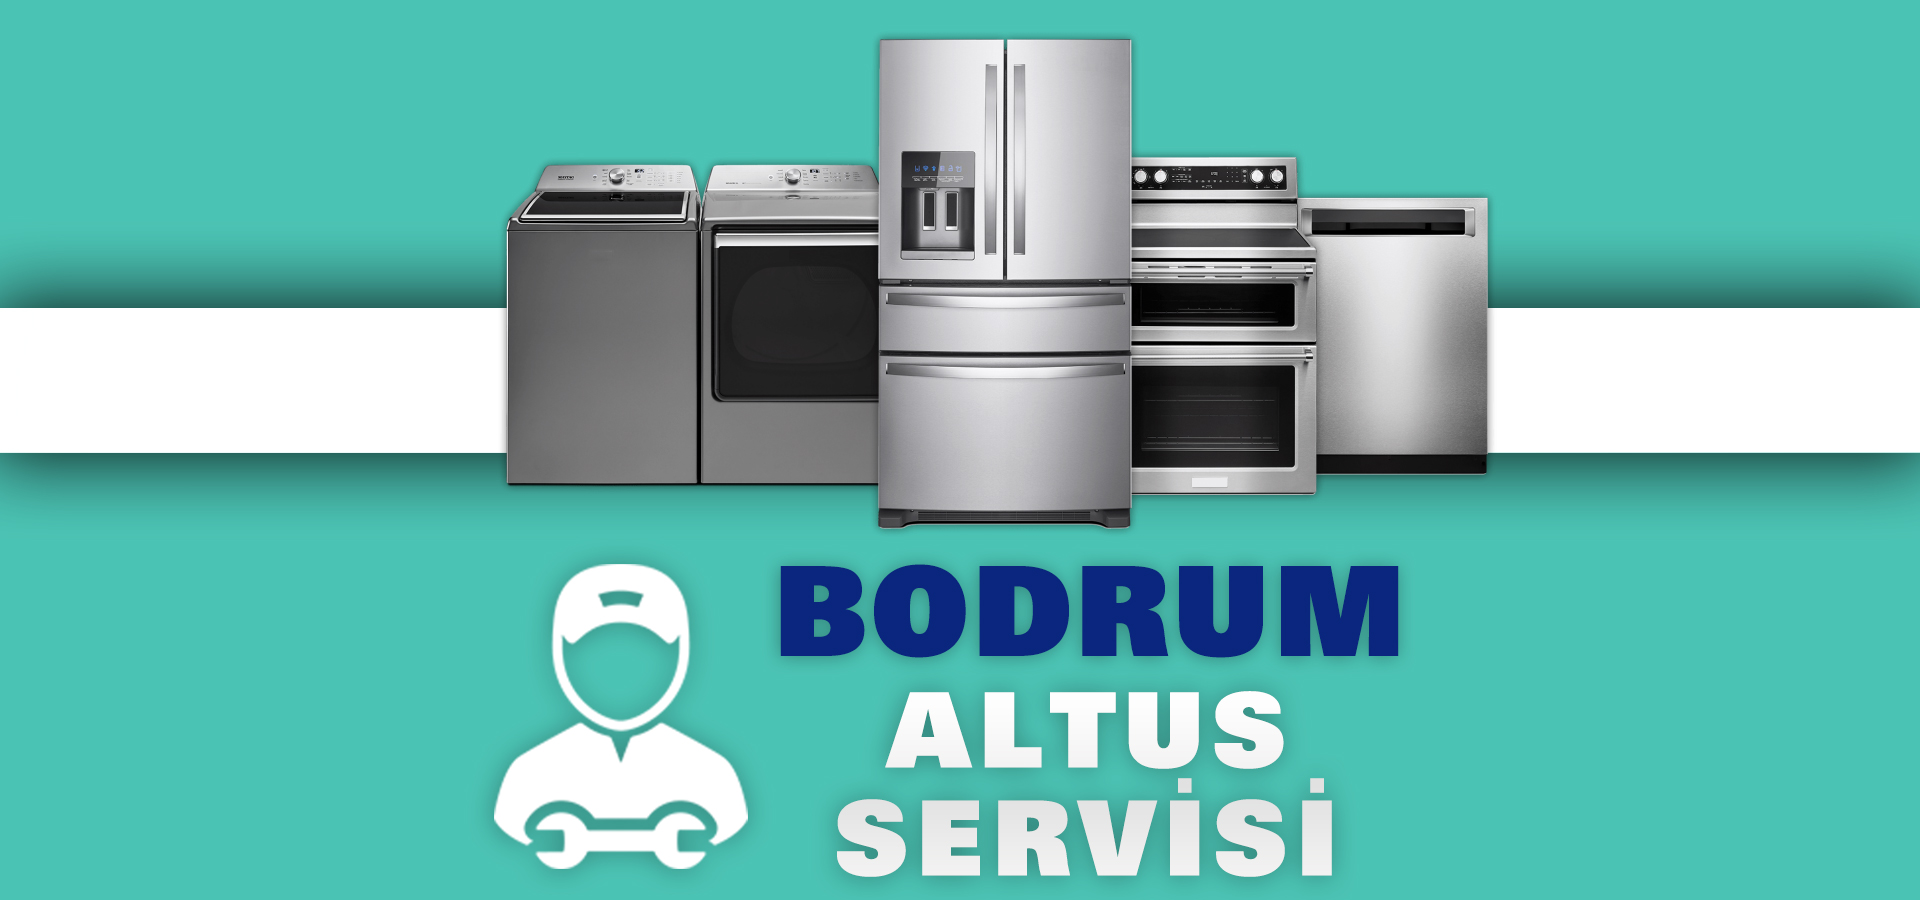 Bodrum Altus Servisi